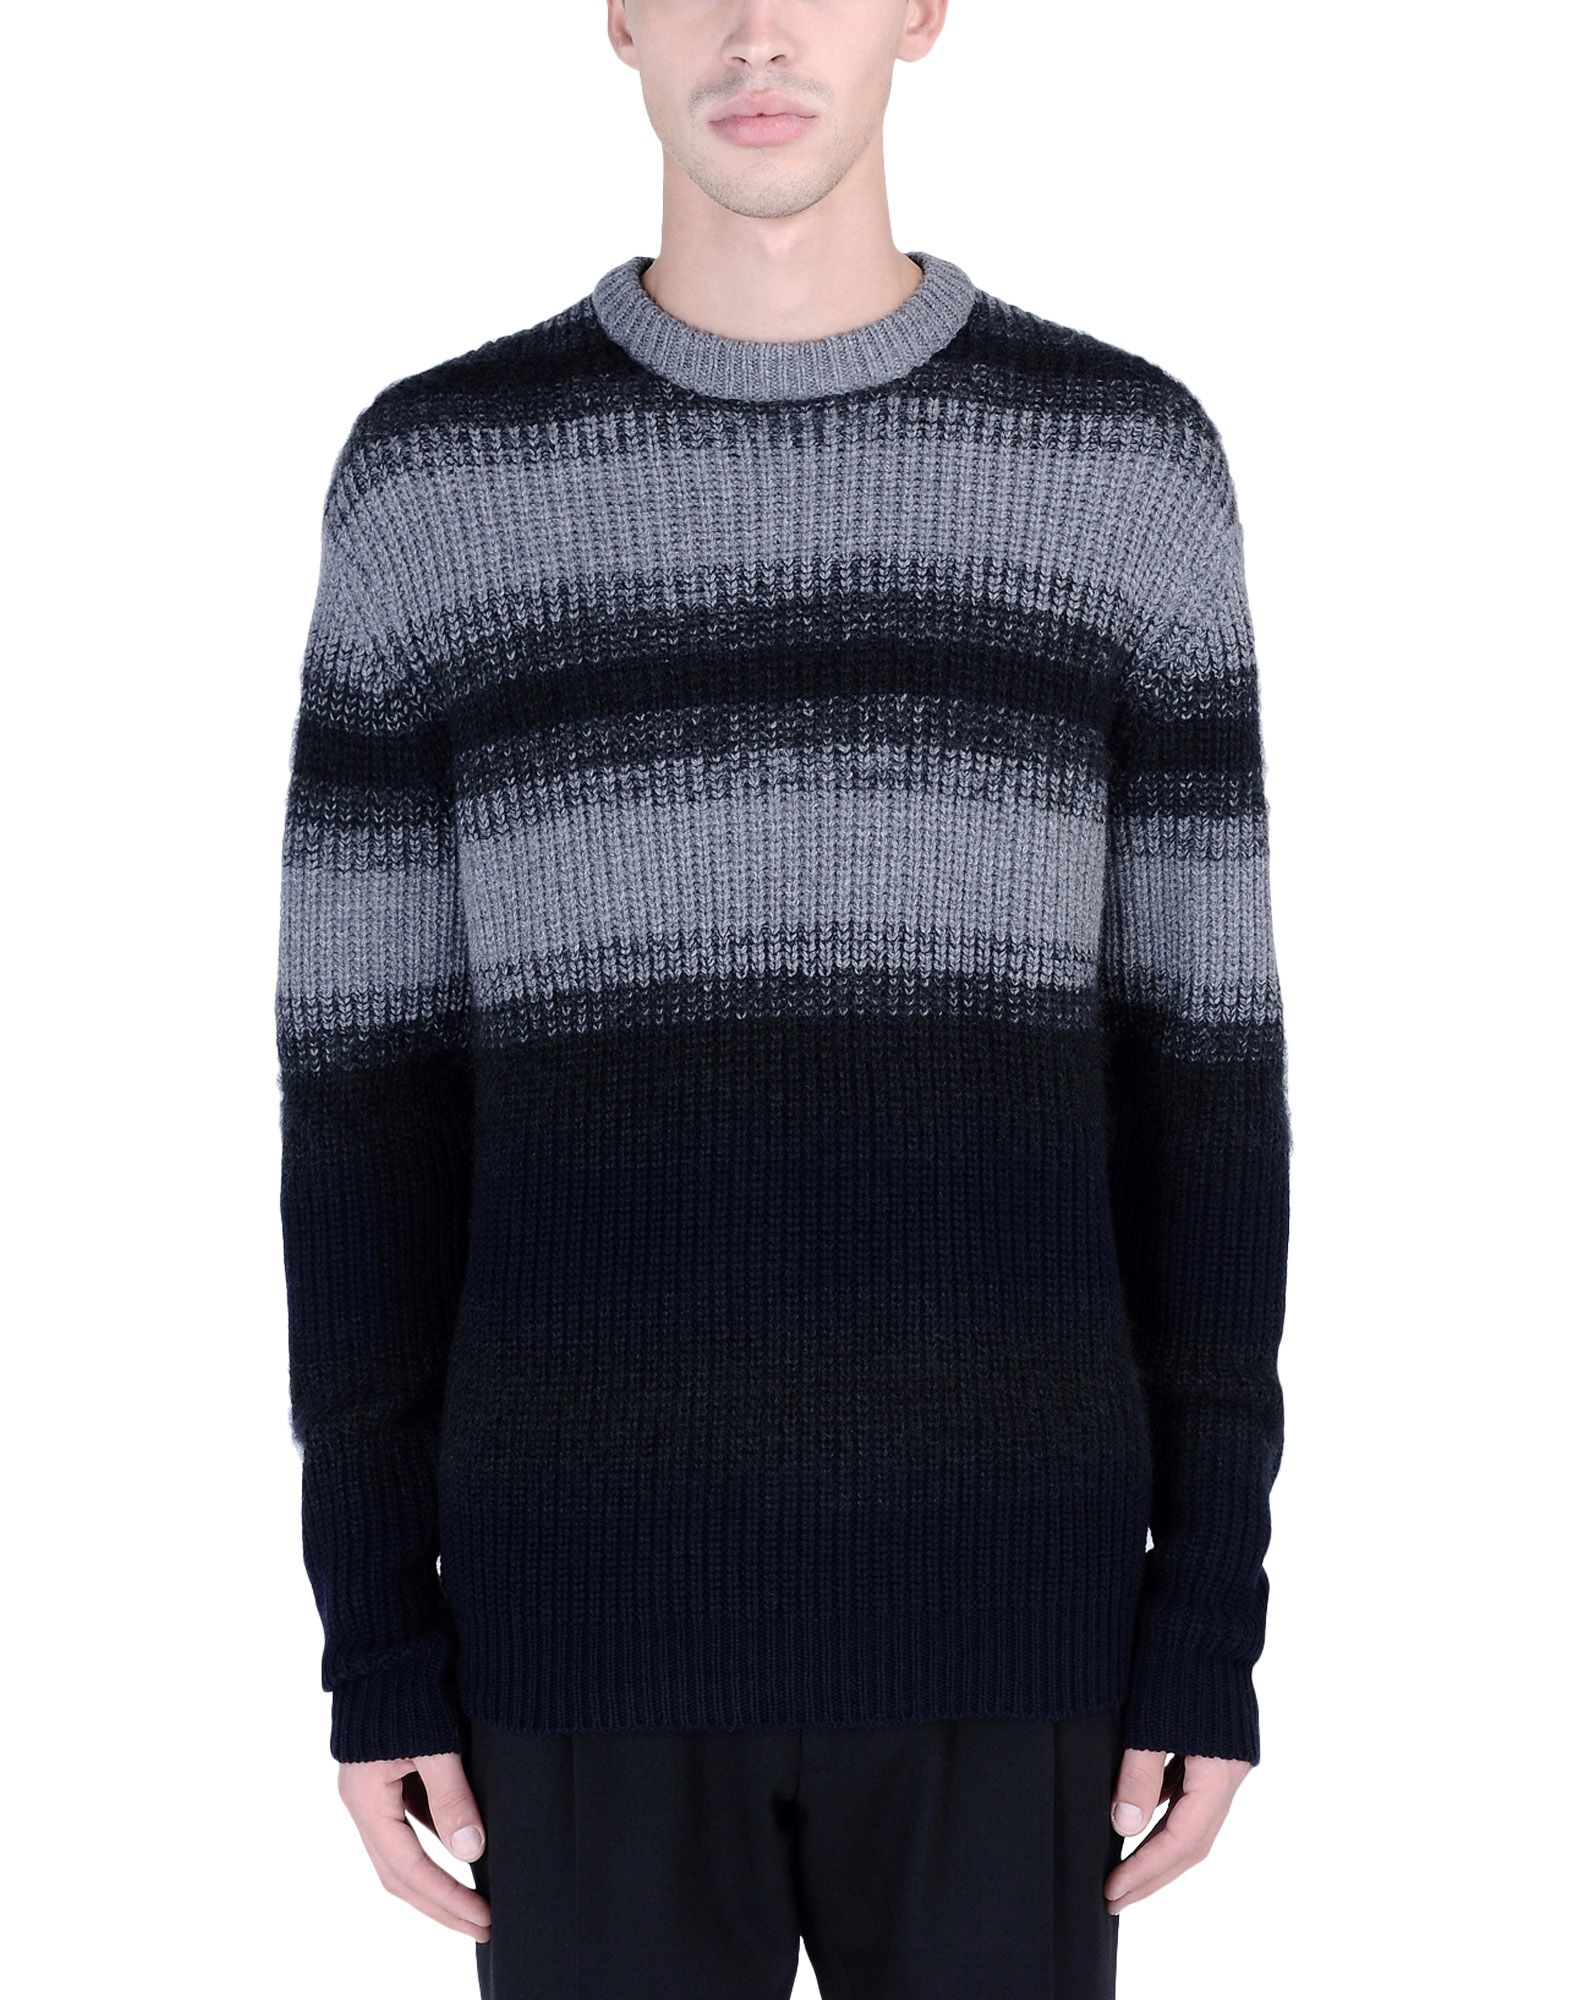 McQ Ombré Stripe Wool Sweater in Grey (Gray) for Men - Lyst